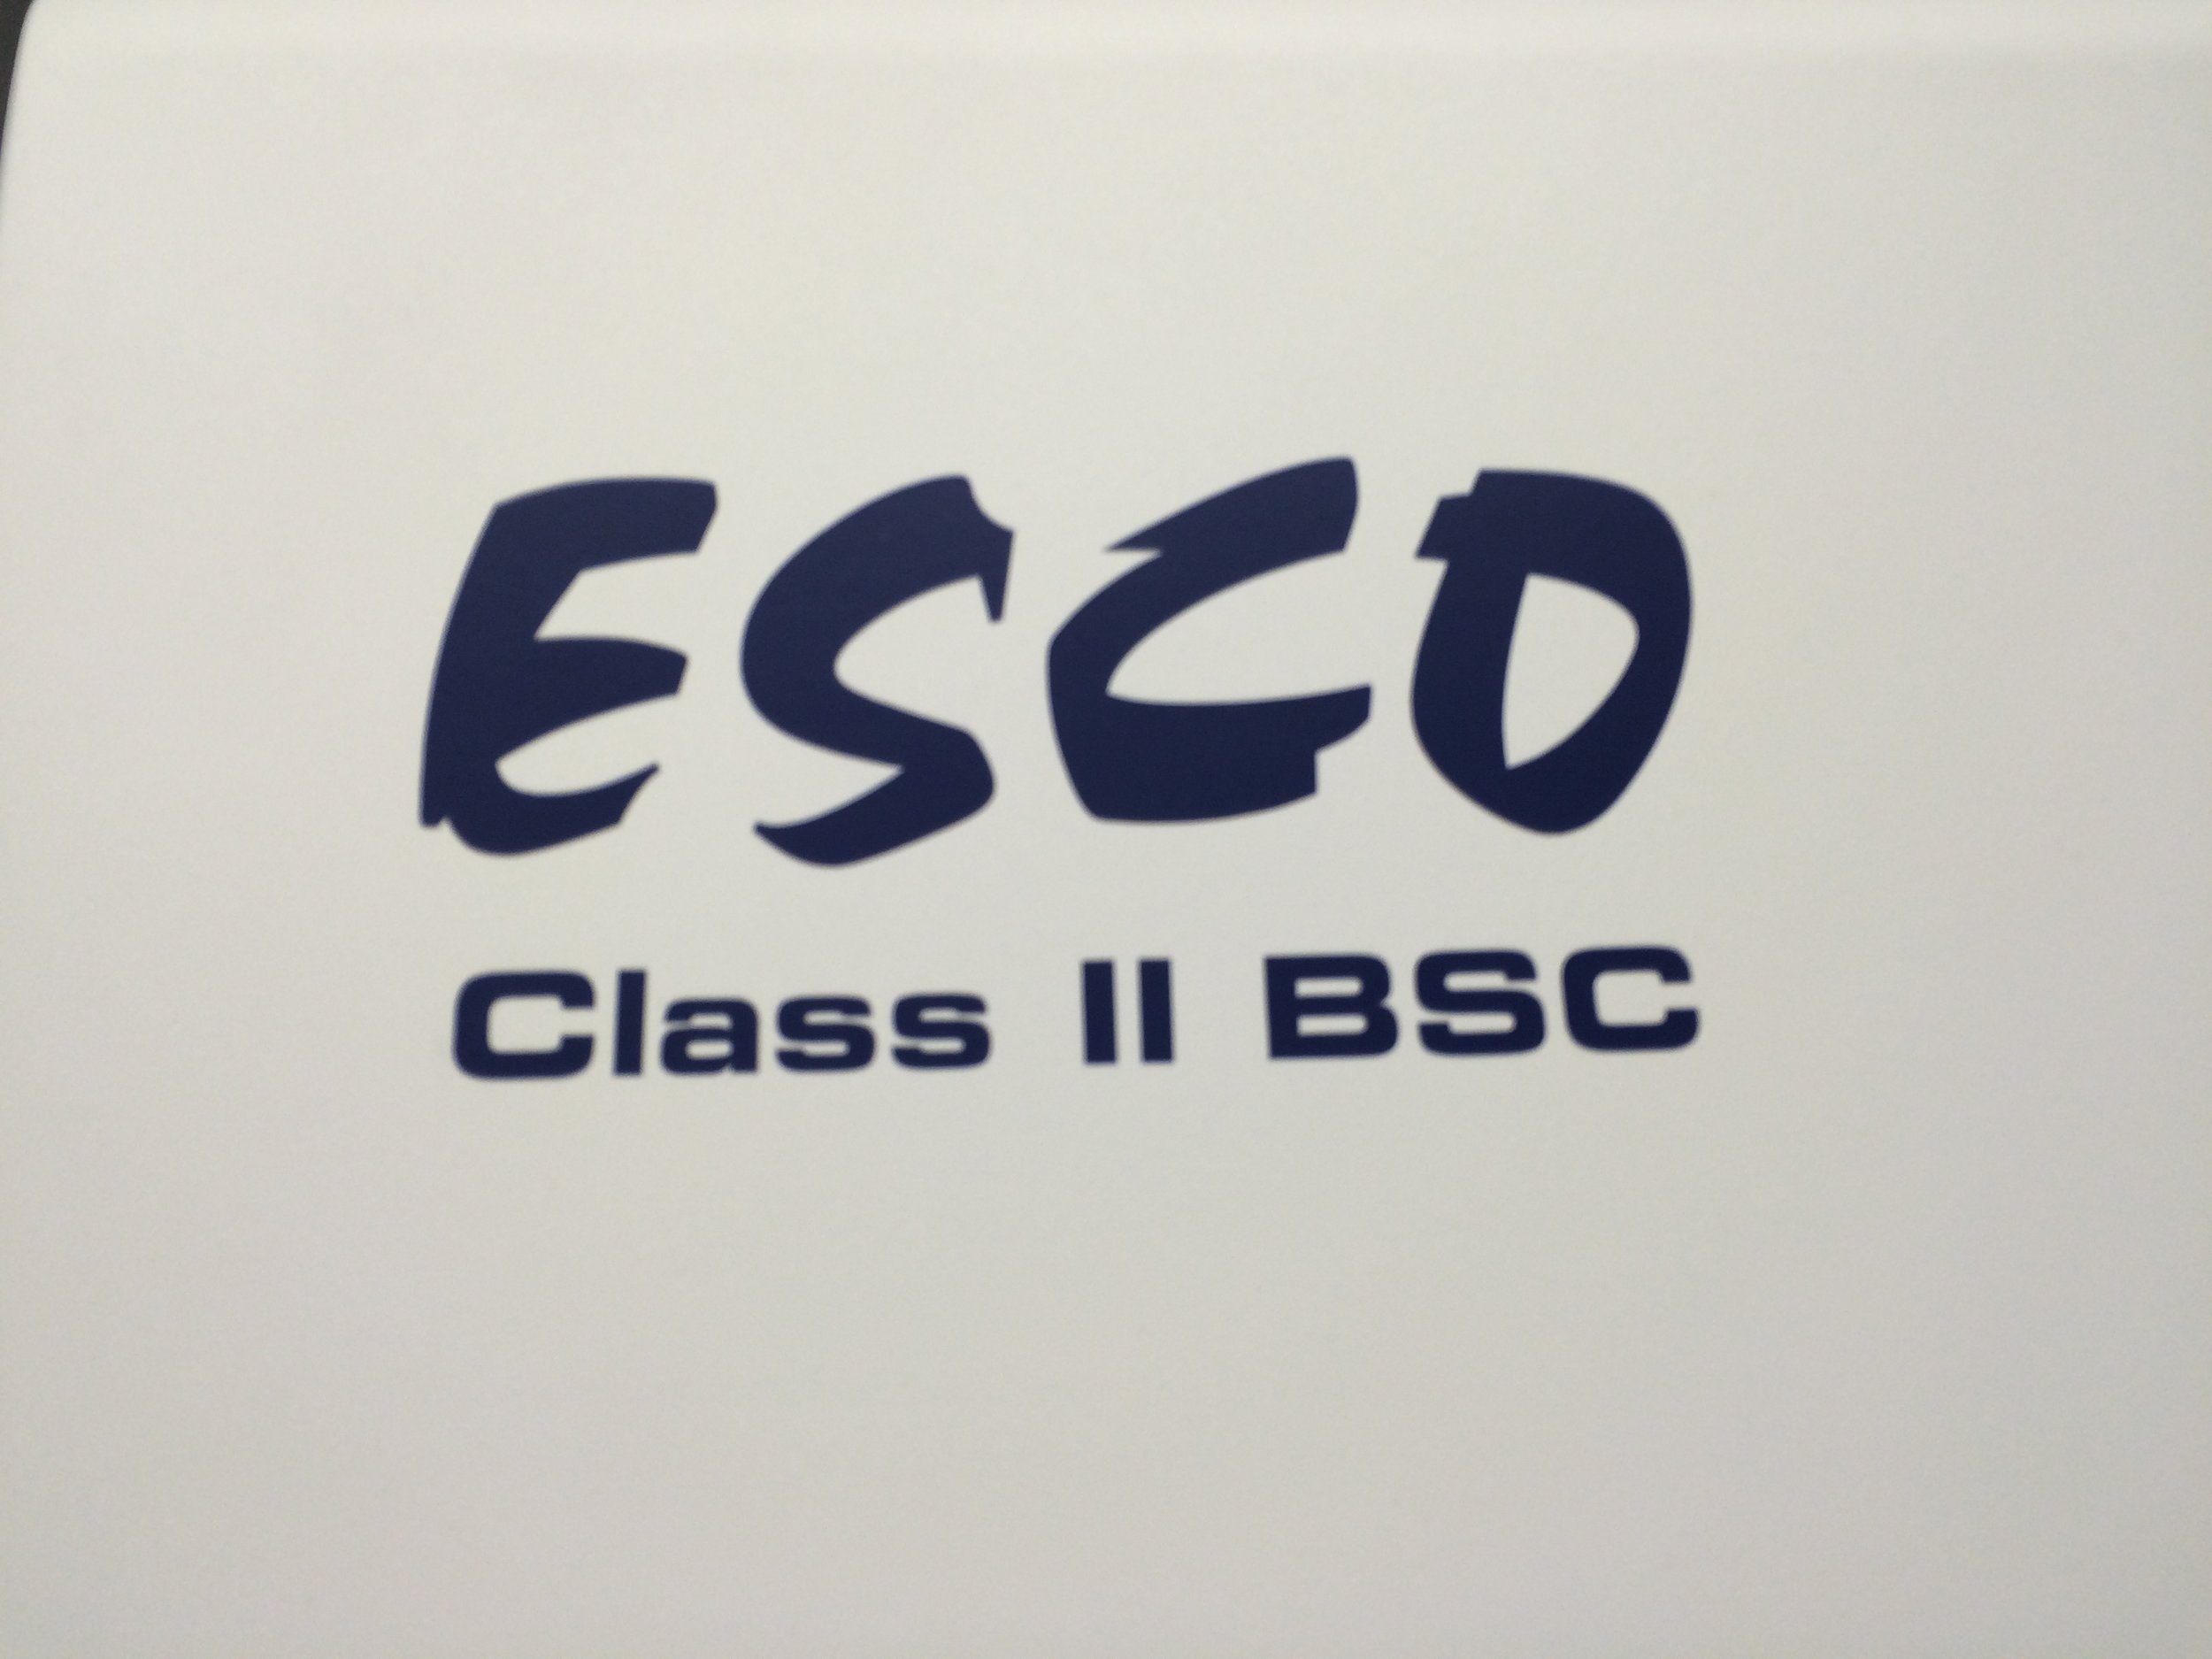 Esco Class II BSC-01.JPG